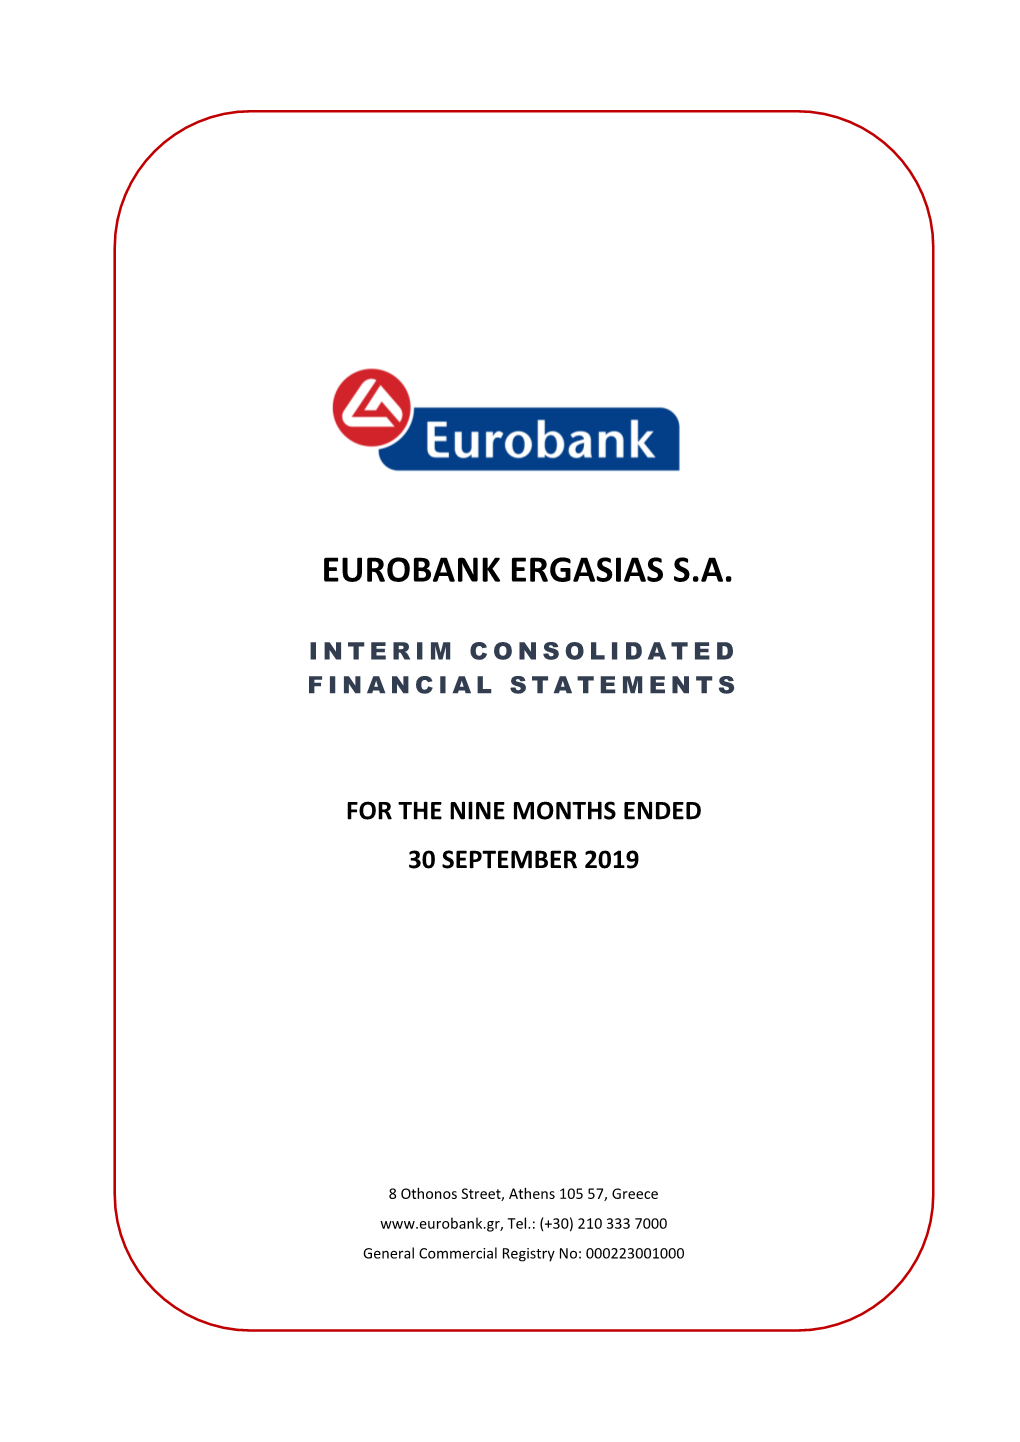 Eurobank Ergasias S.A